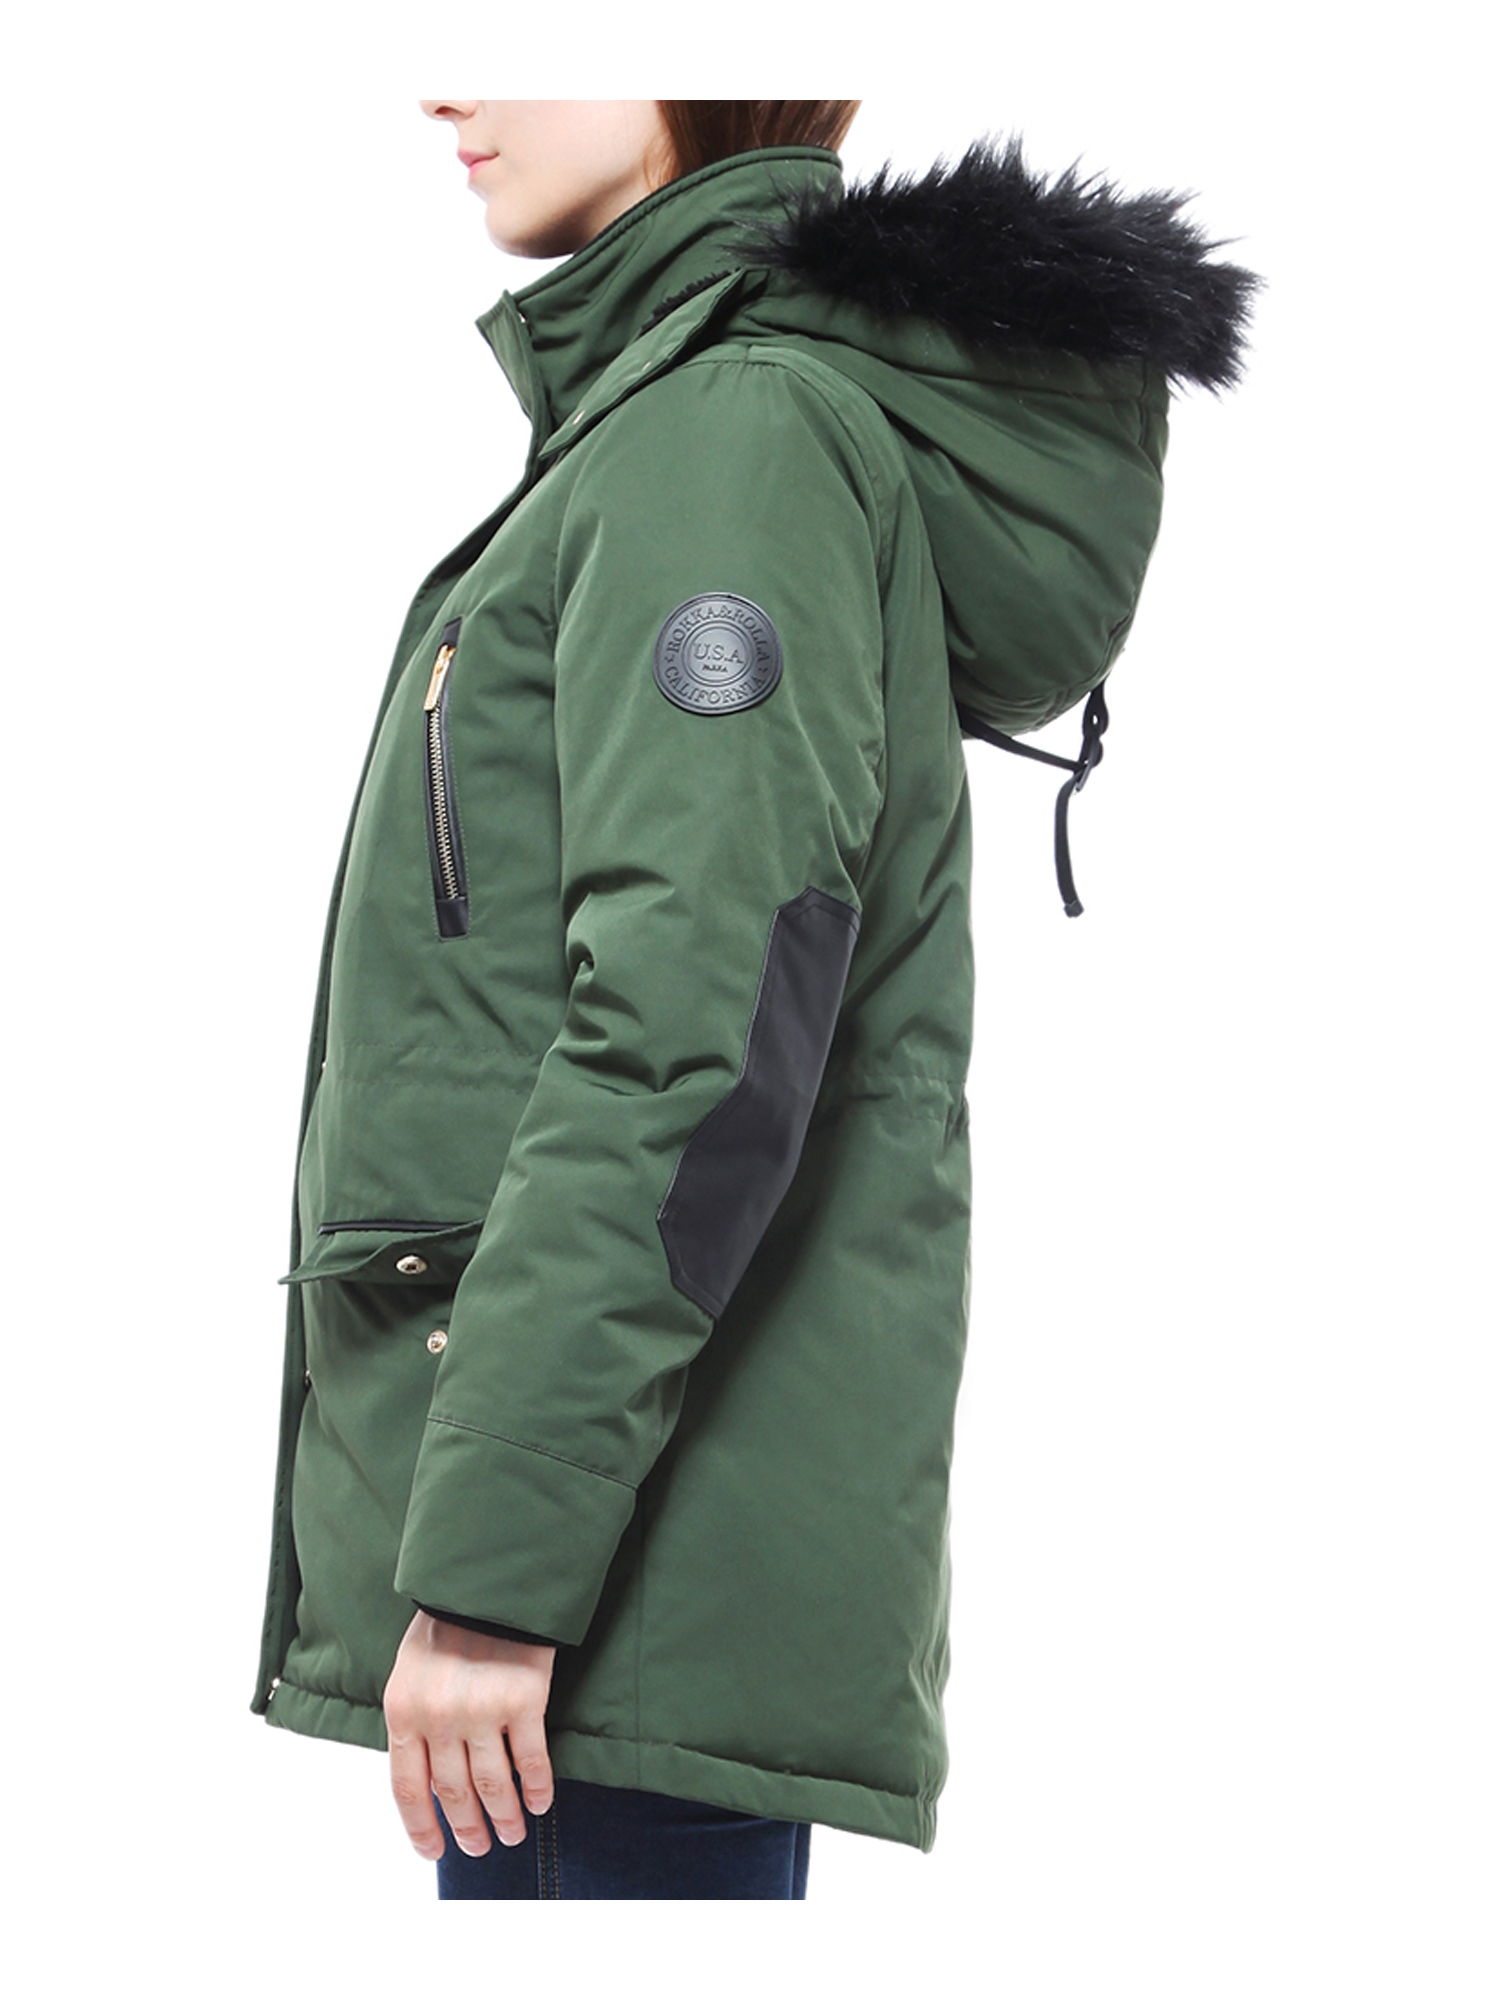 Rokka&Rolla Women's Winter Coat with Faux Shearling Hood Parka Jacket - image 4 of 8